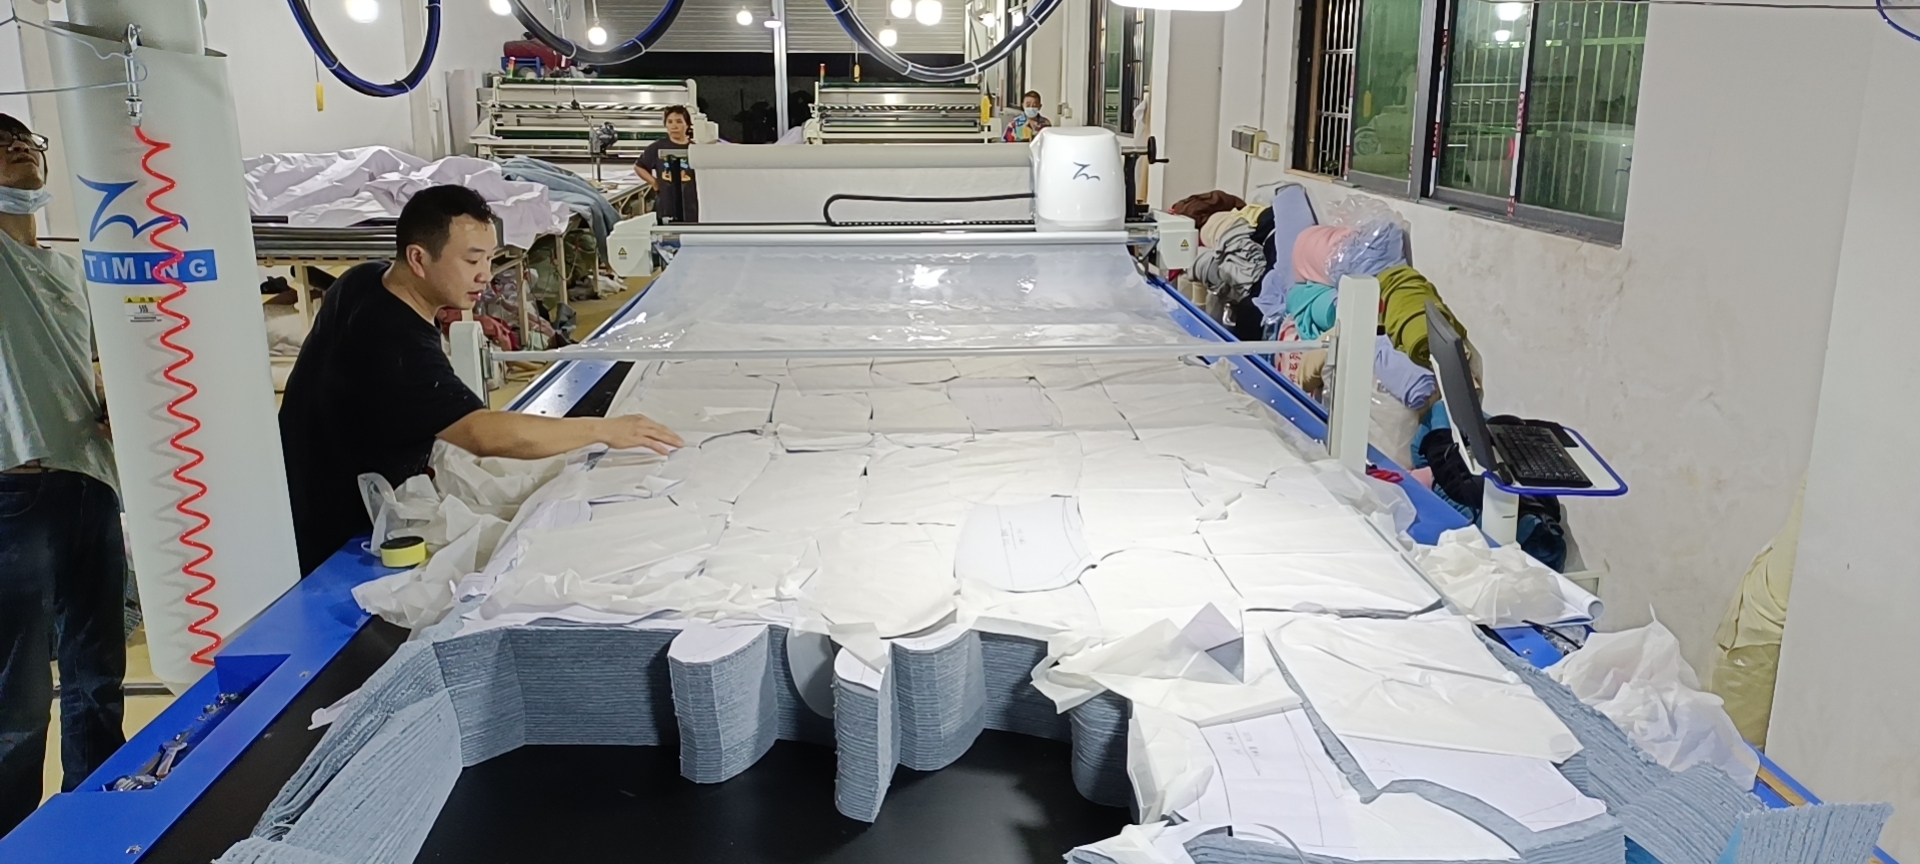 Fabric pattern cutting machine